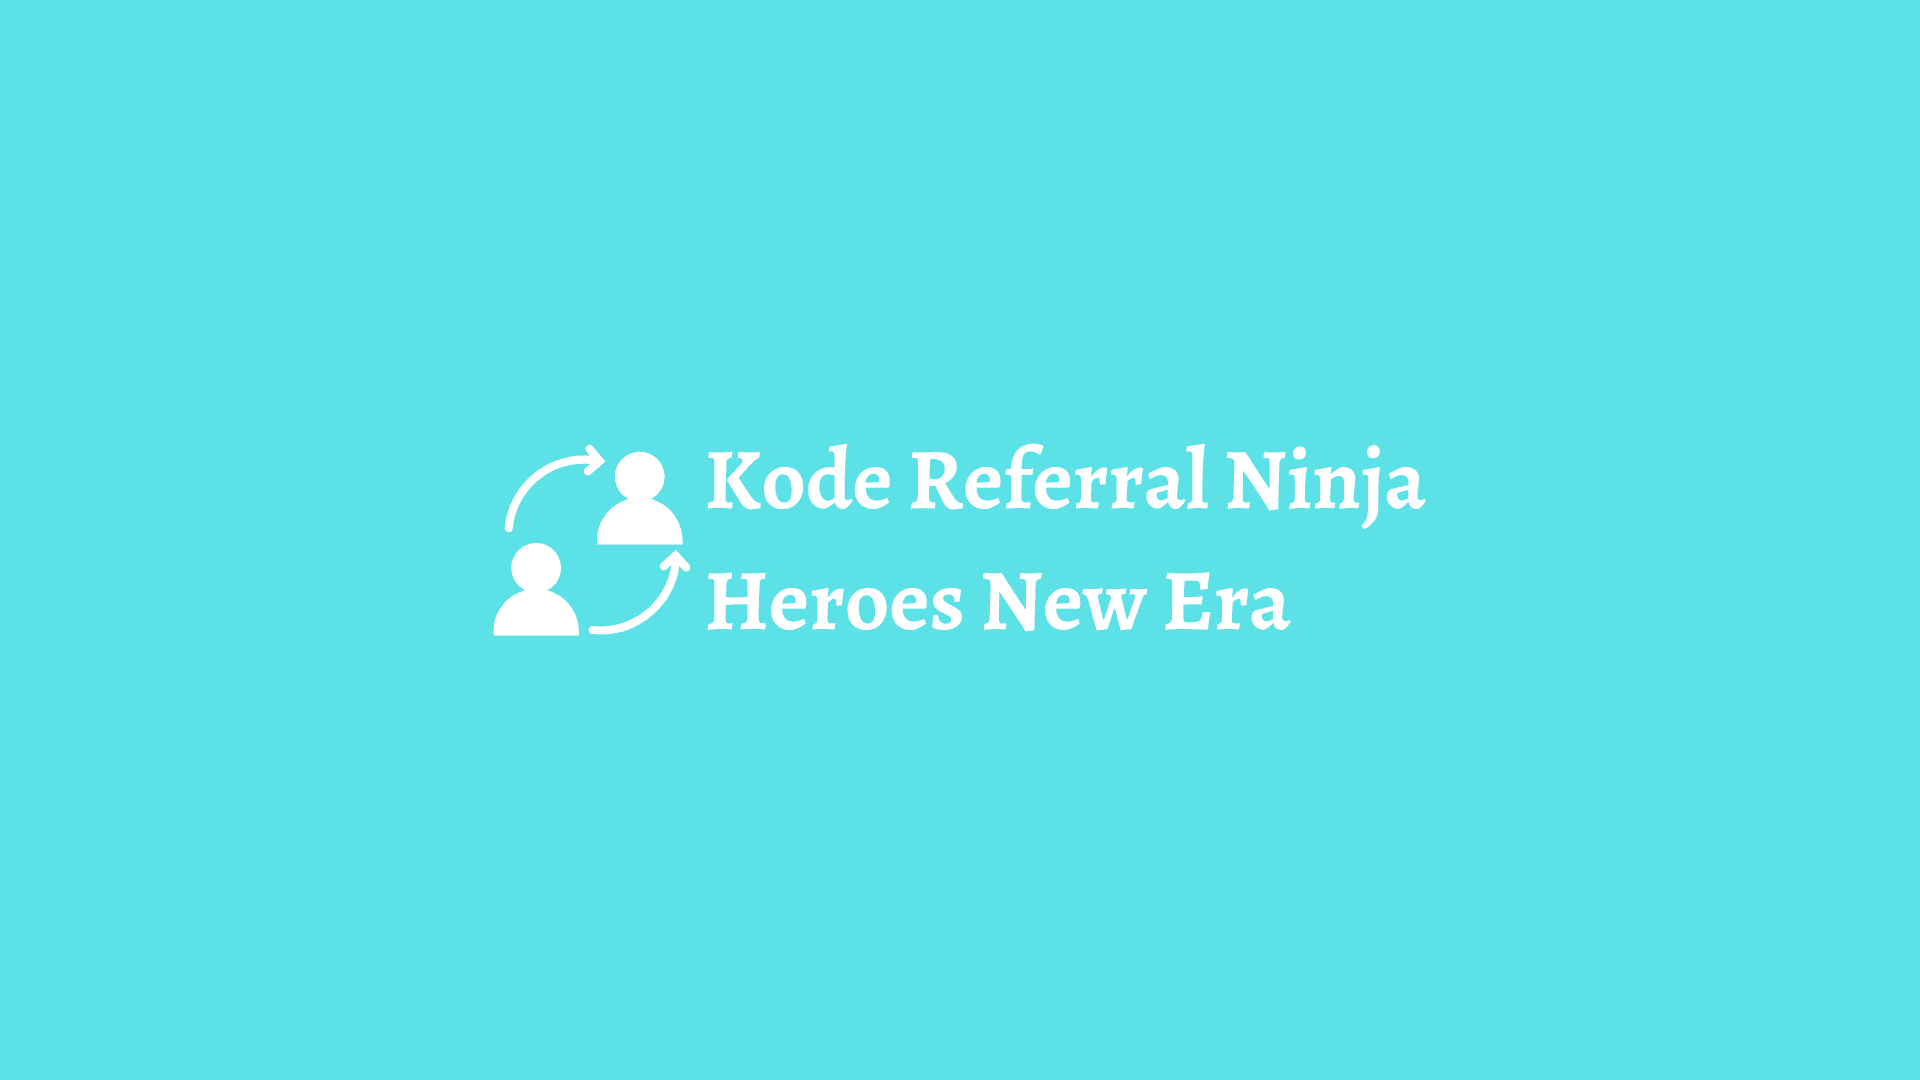 kode referral ninja heroes new era